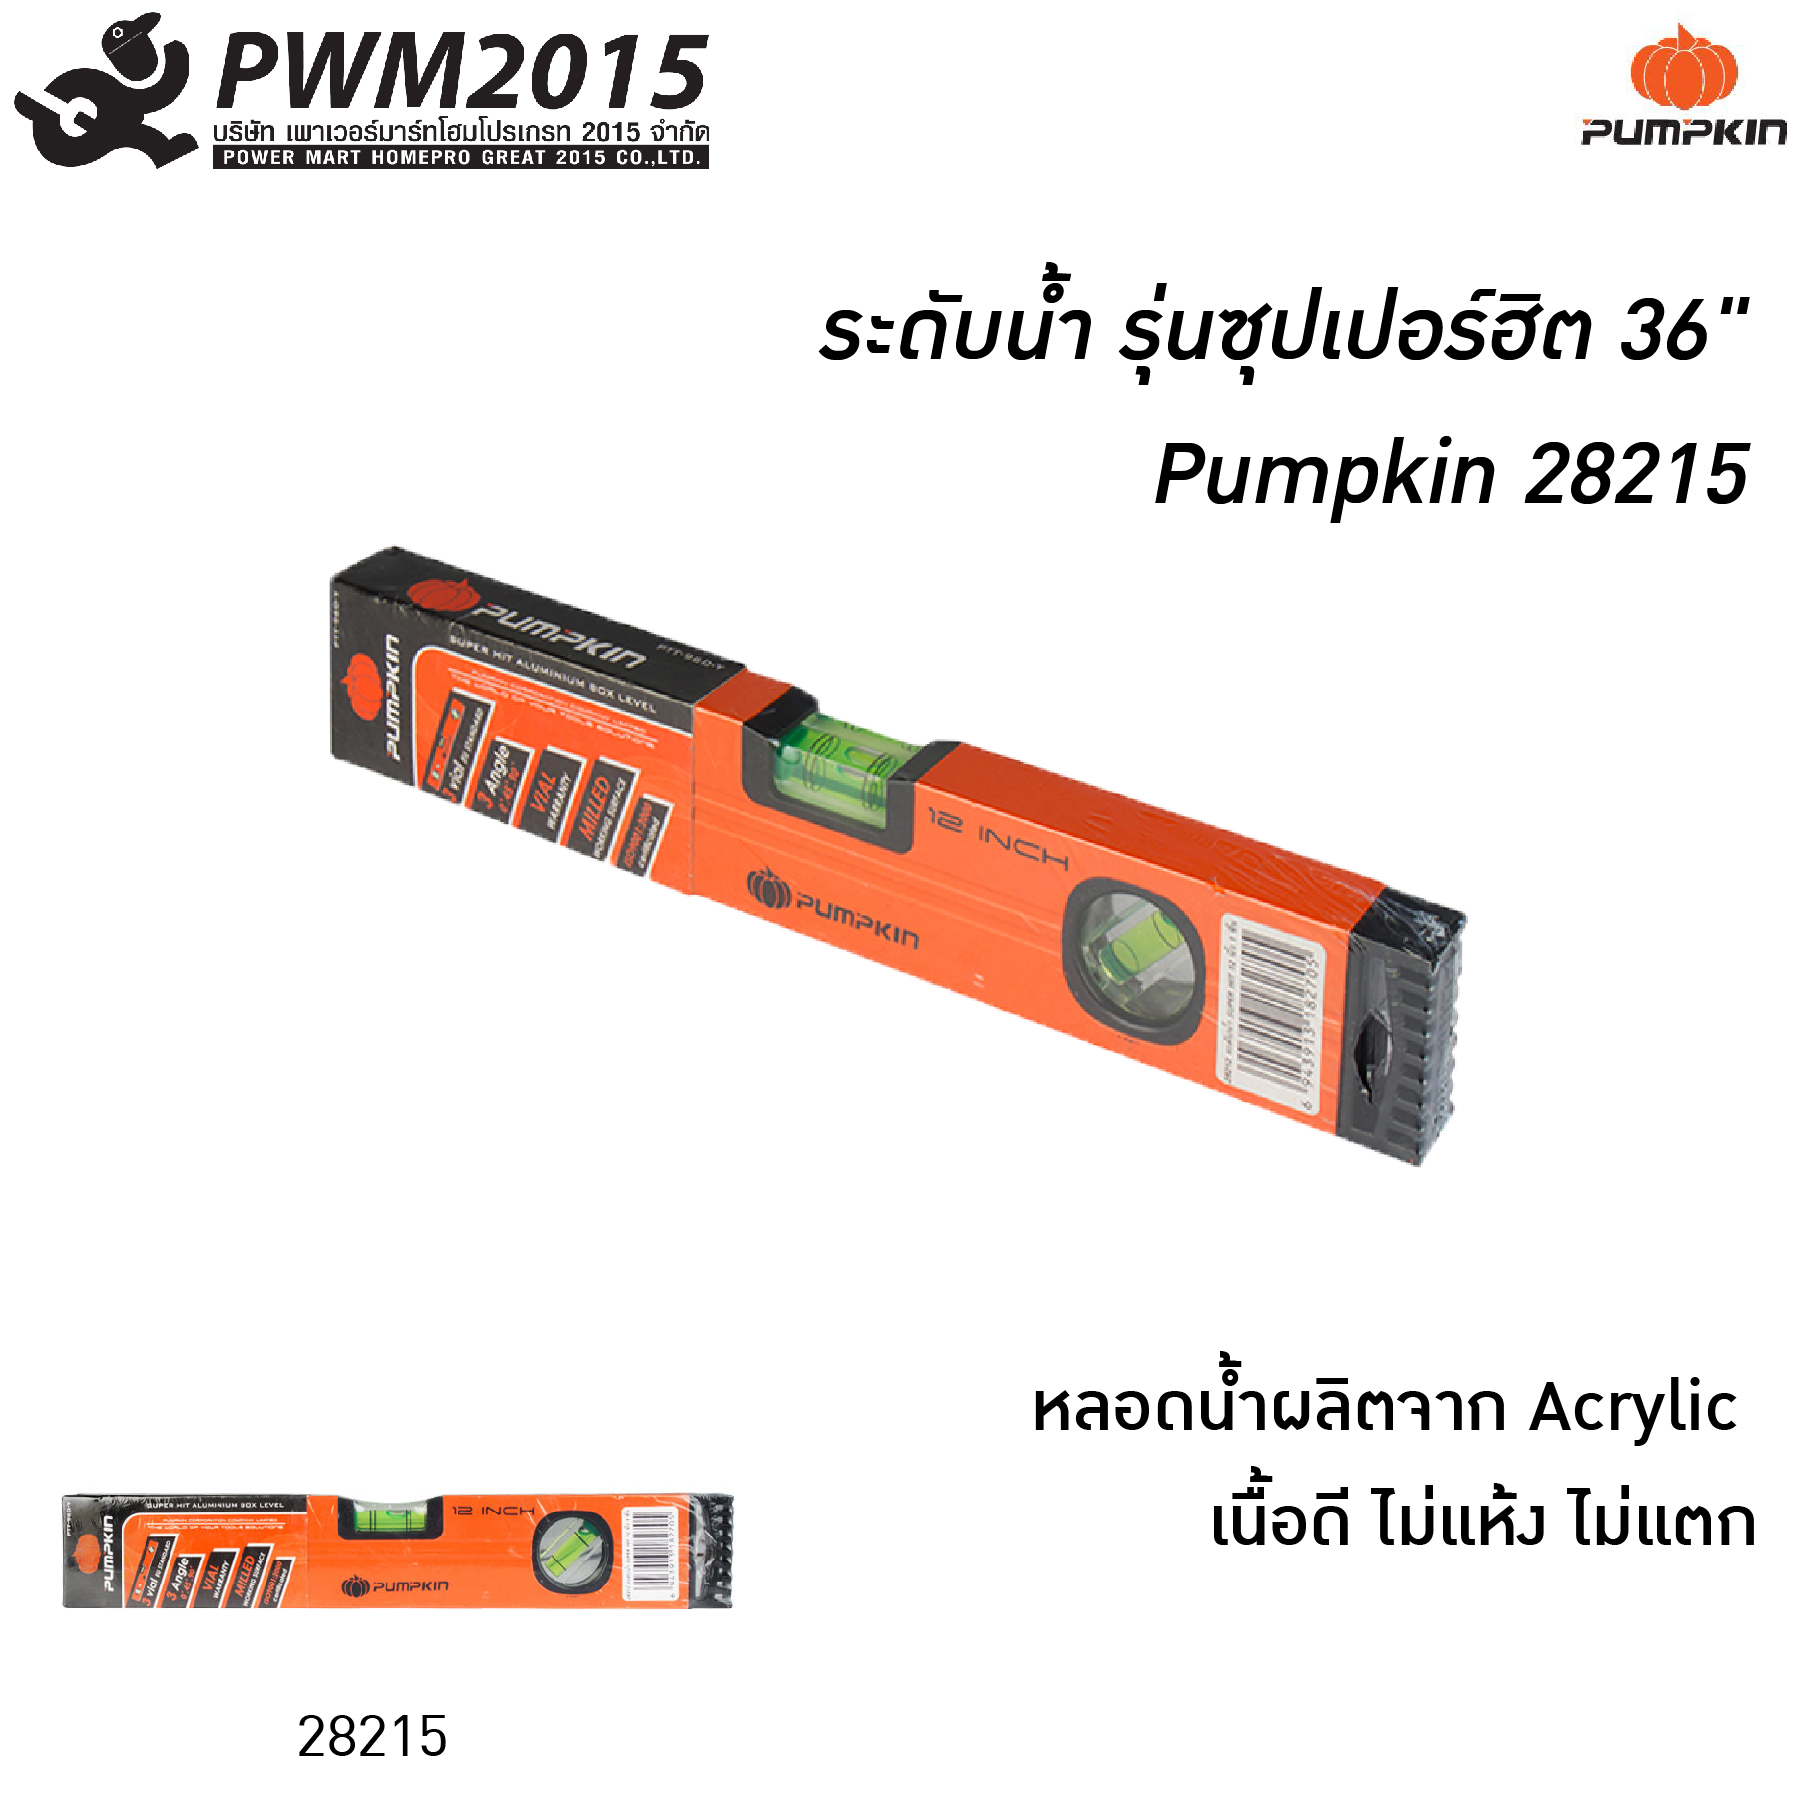 ระดับน้ำ รุ่นซุปเปอร์ฮิต 36 นิ้ว Pumpkin 28215 ที่วัดระดับน้ำ PWM2015